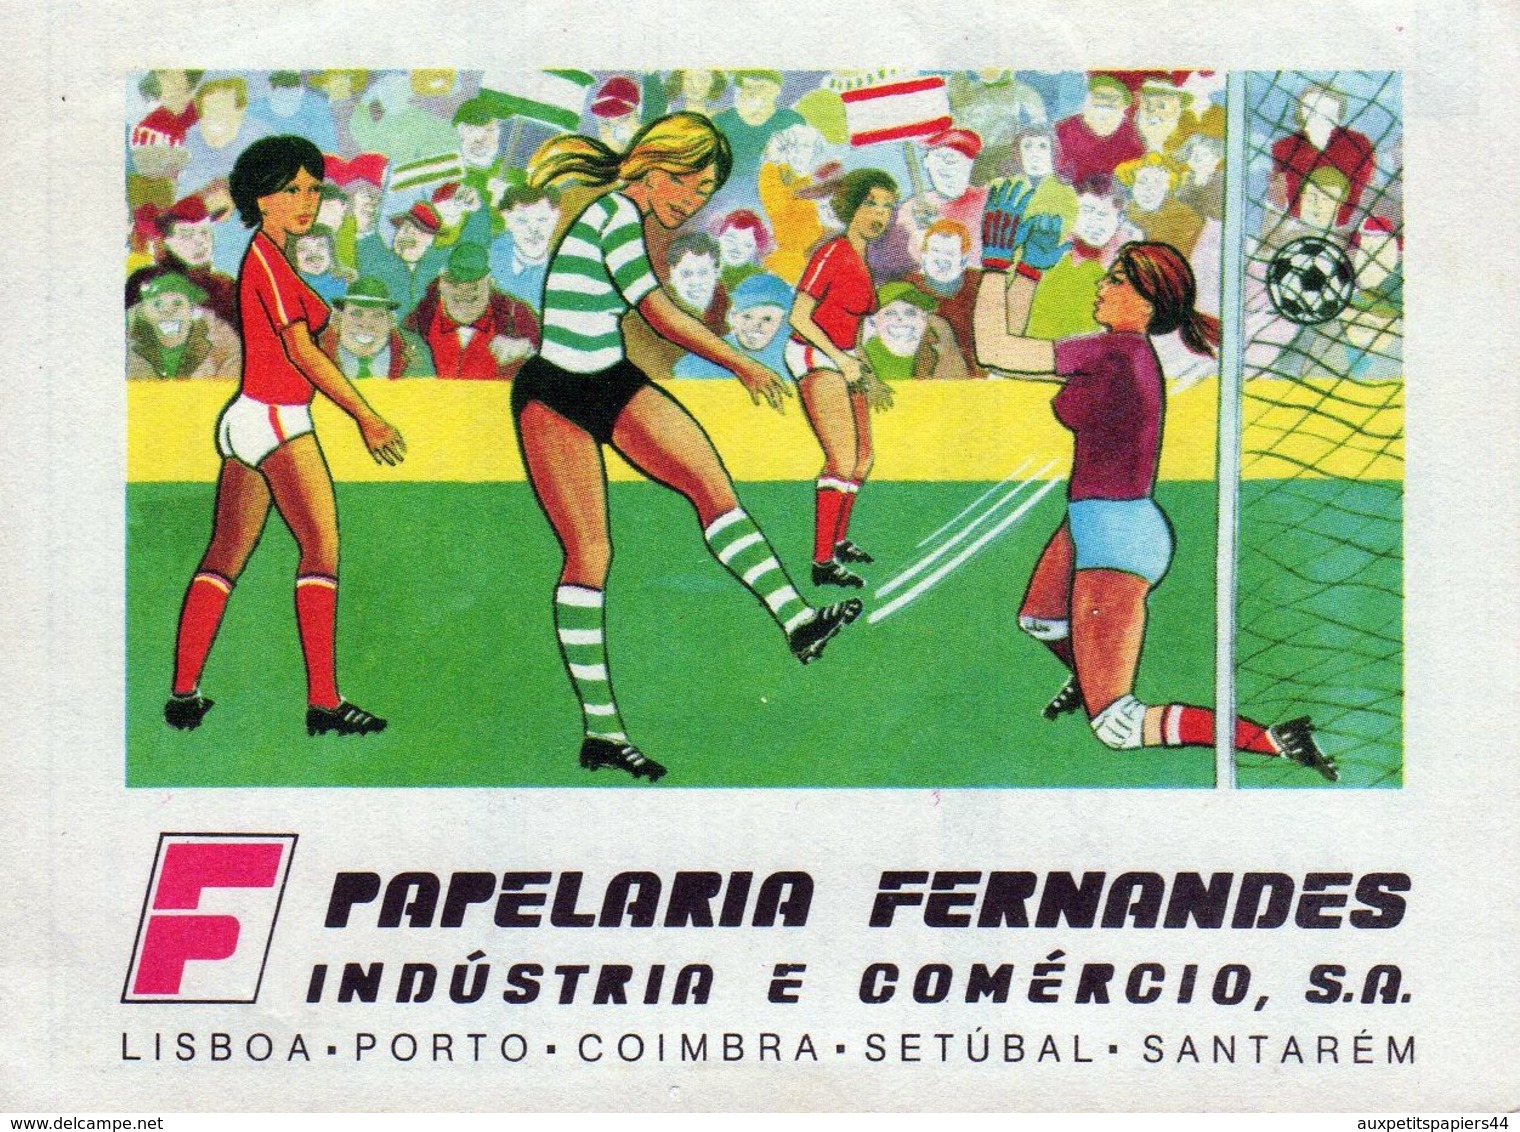 Calendrier Original Sport Lisboa E Benefica - Campeao Nacional 1986-1987 - Football Portugais - Papelaria Fernandes - Petit Format : 1981-90